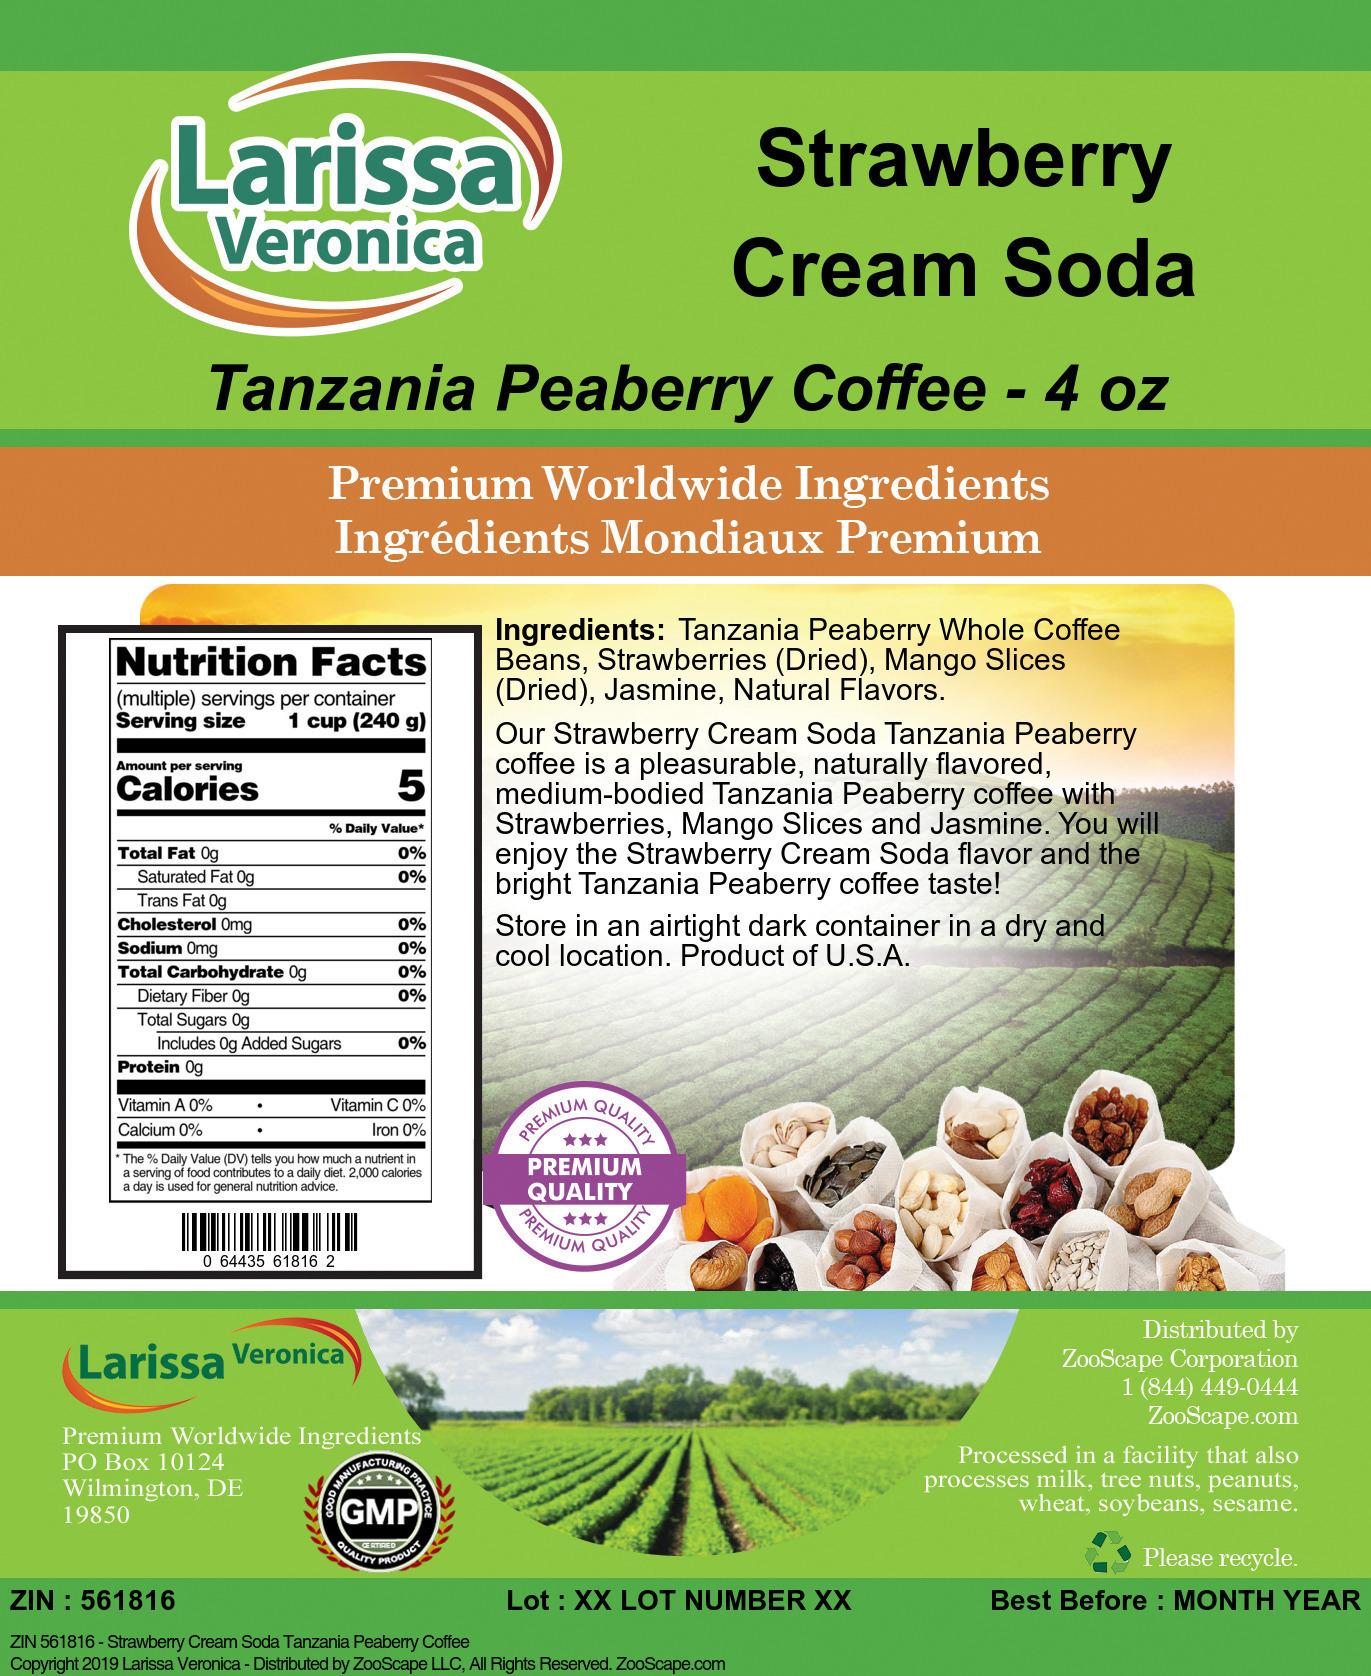 Strawberry Cream Soda Tanzania Peaberry Coffee - Label